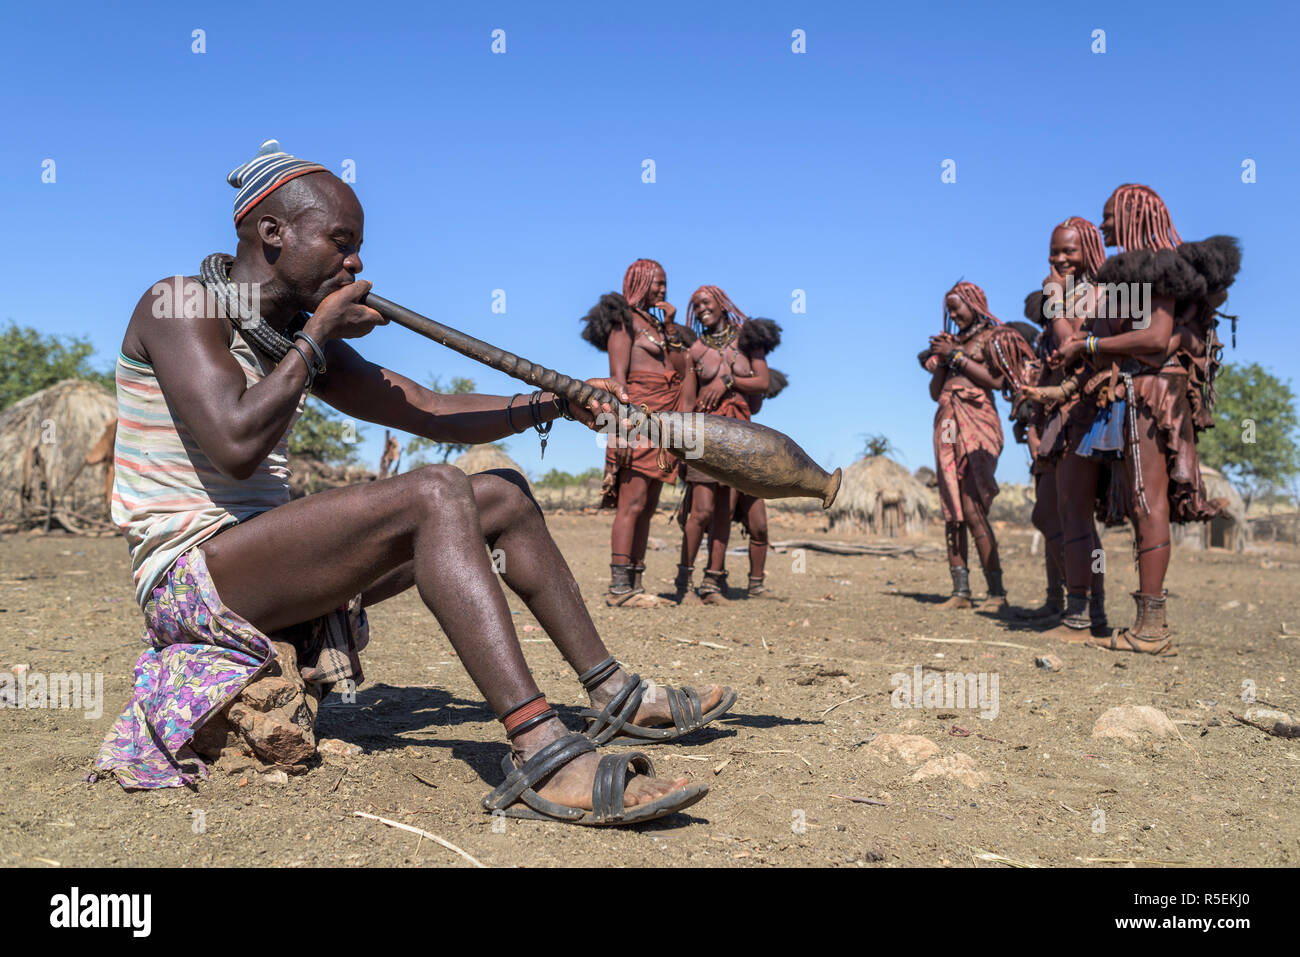 Gruppe von Frauen Himba mit traditionellen Kleider tanzen im Kreis, während ein Mann spielt eine Trompete aus einem orix Horn. Stockfoto